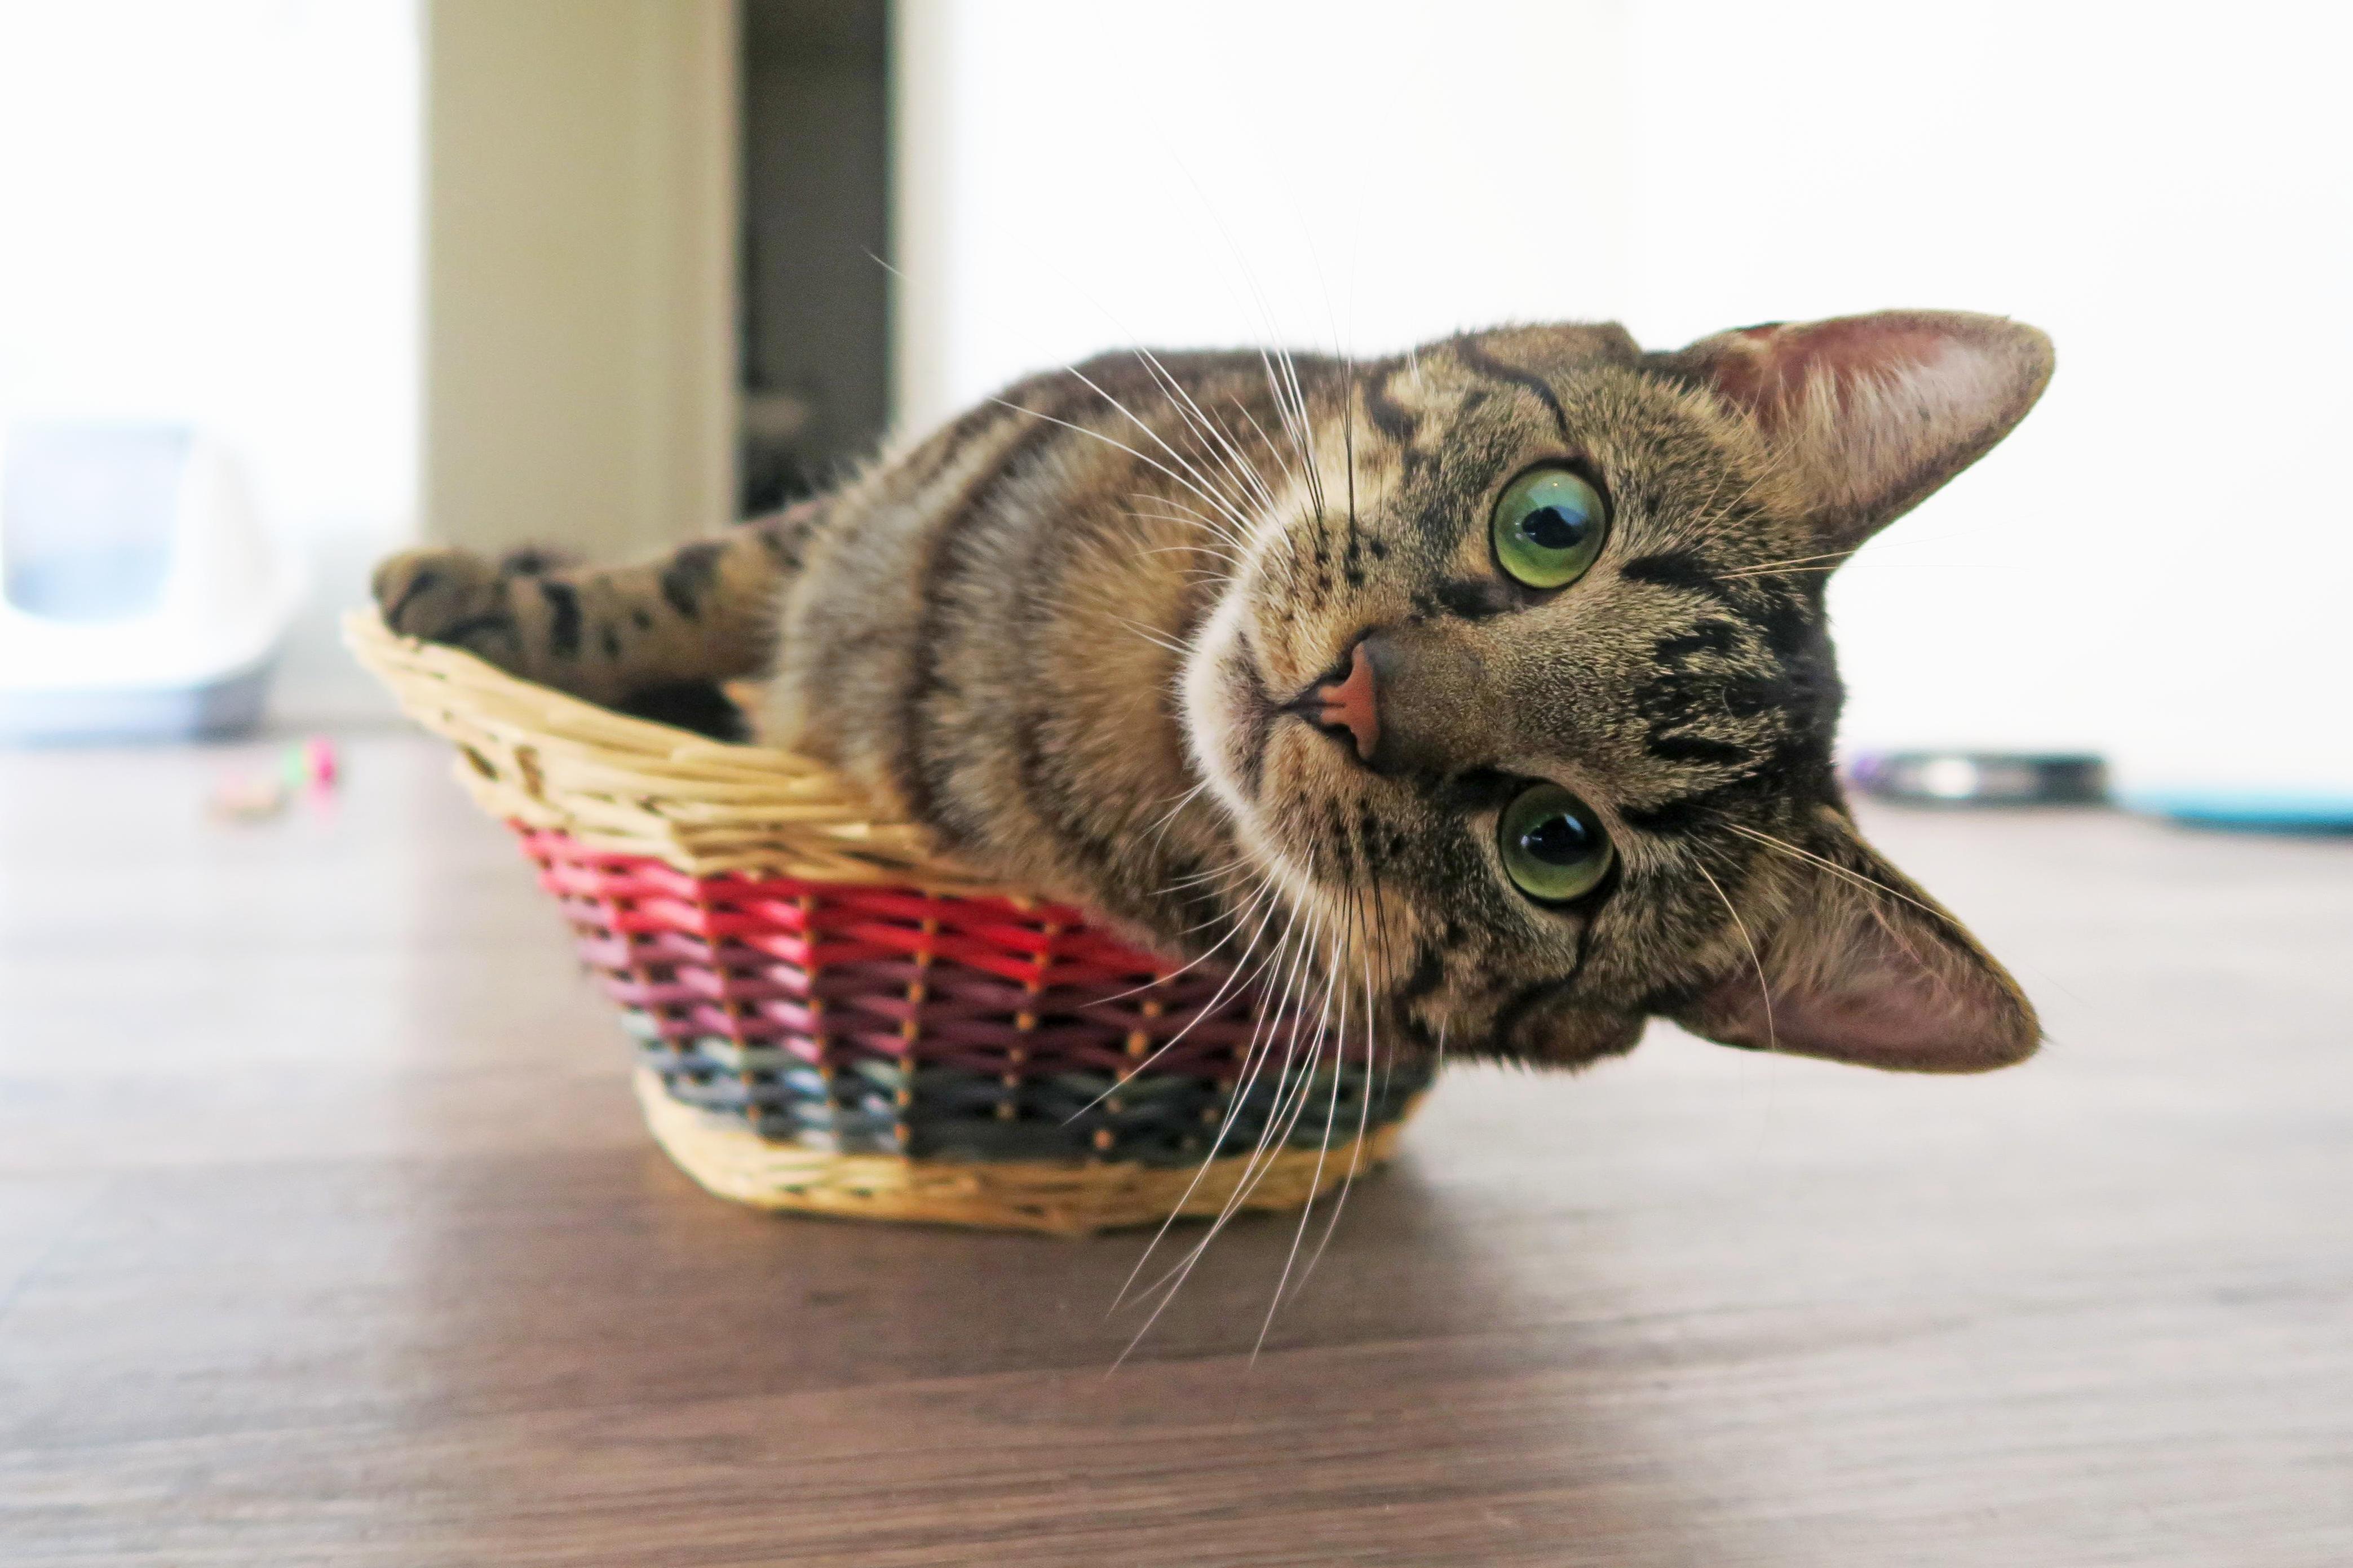 I think hes asking for a bigger basket